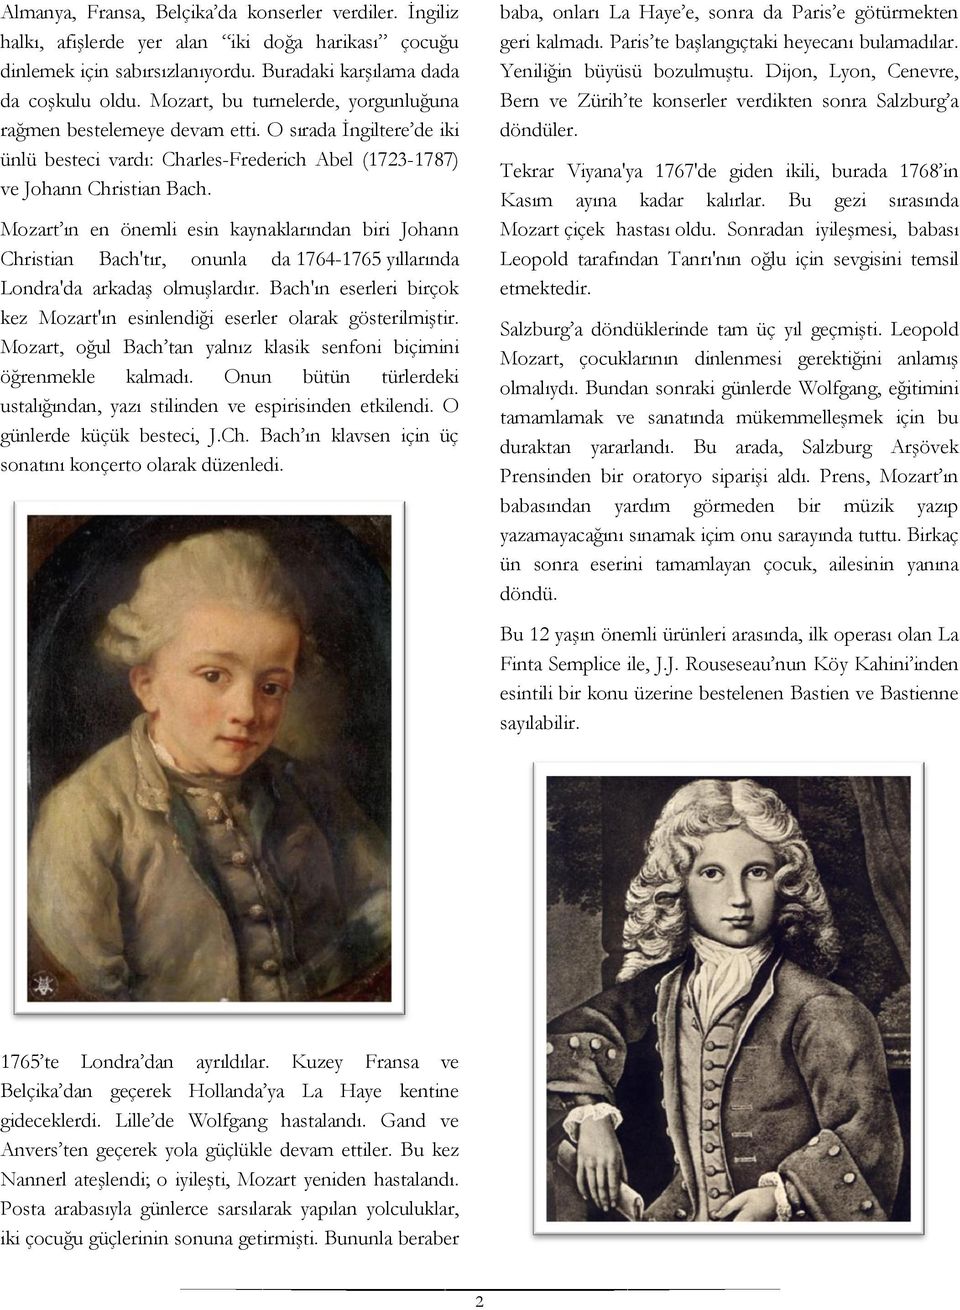 Mozart ın en önemli esin kaynaklarından biri Johann Christian Bach'tır, onunla da 1764-1765 yıllarında Londra'da arkadaş olmuşlardır.